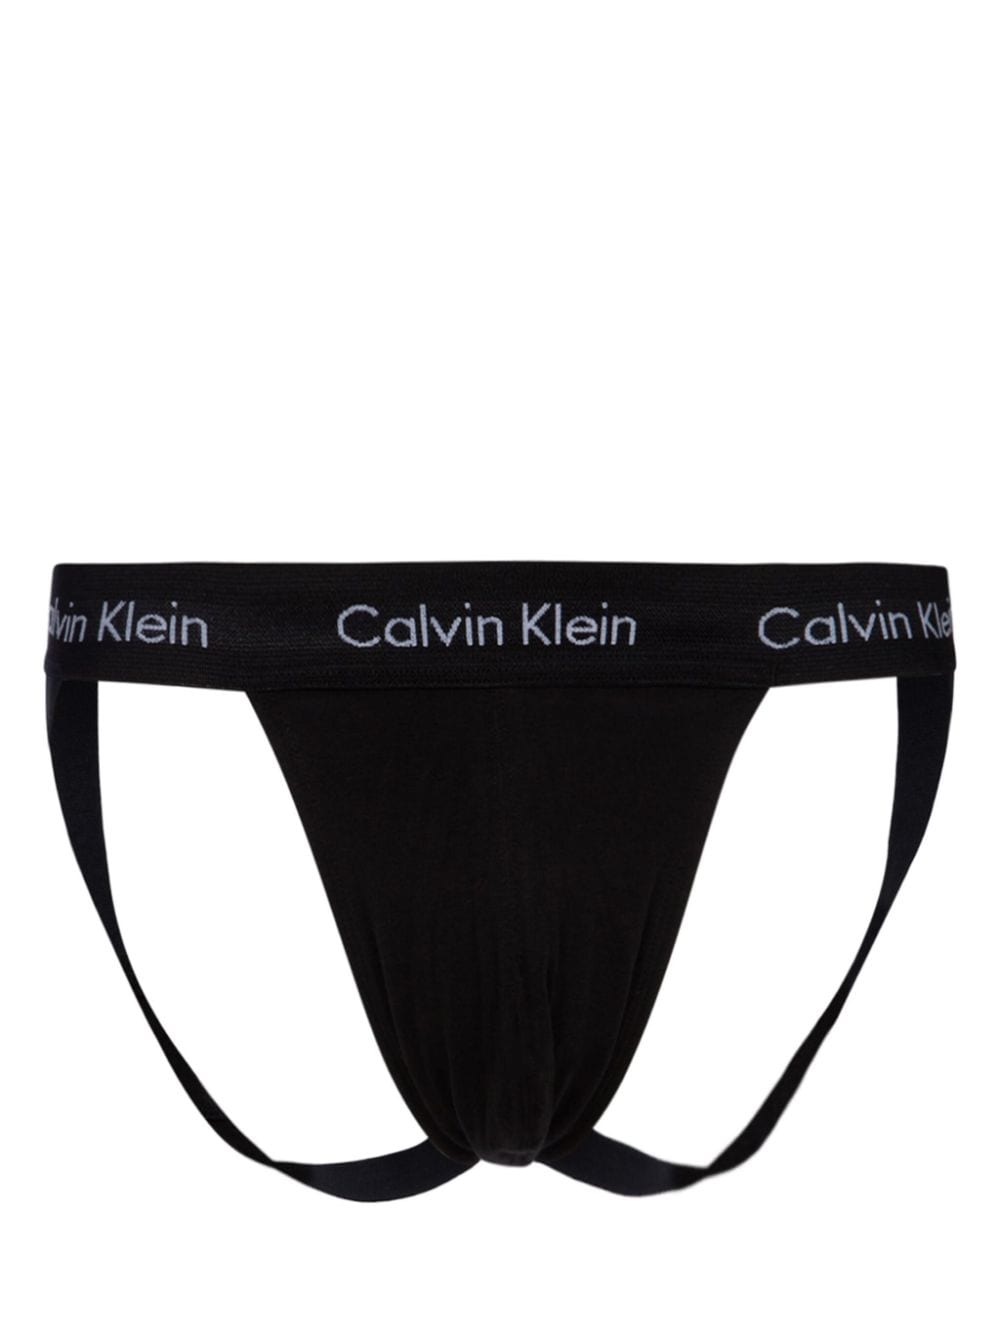 Calvin Klein logo-print jock straps - Black von Calvin Klein